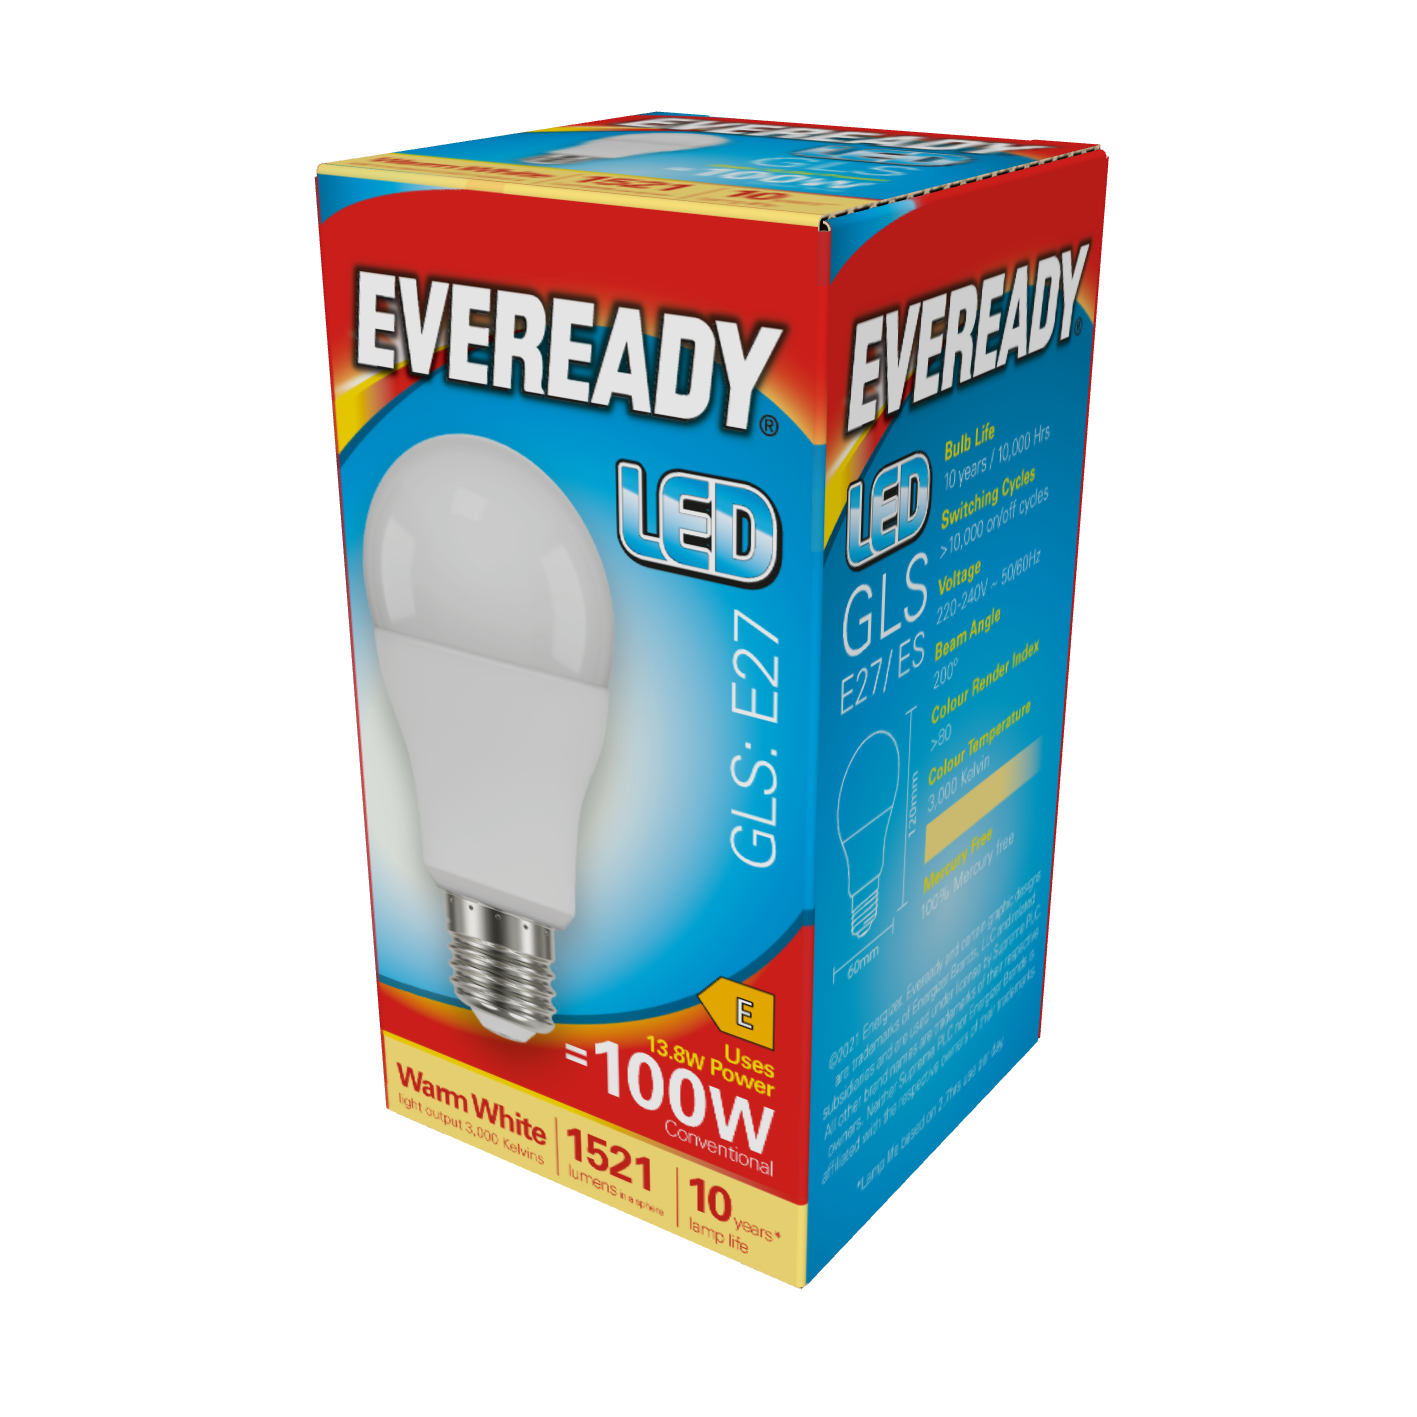 Eveready LED GLS E27 (ES) 1.521lm 13,8W 3.000K (Blanco Cálido), Caja de 1